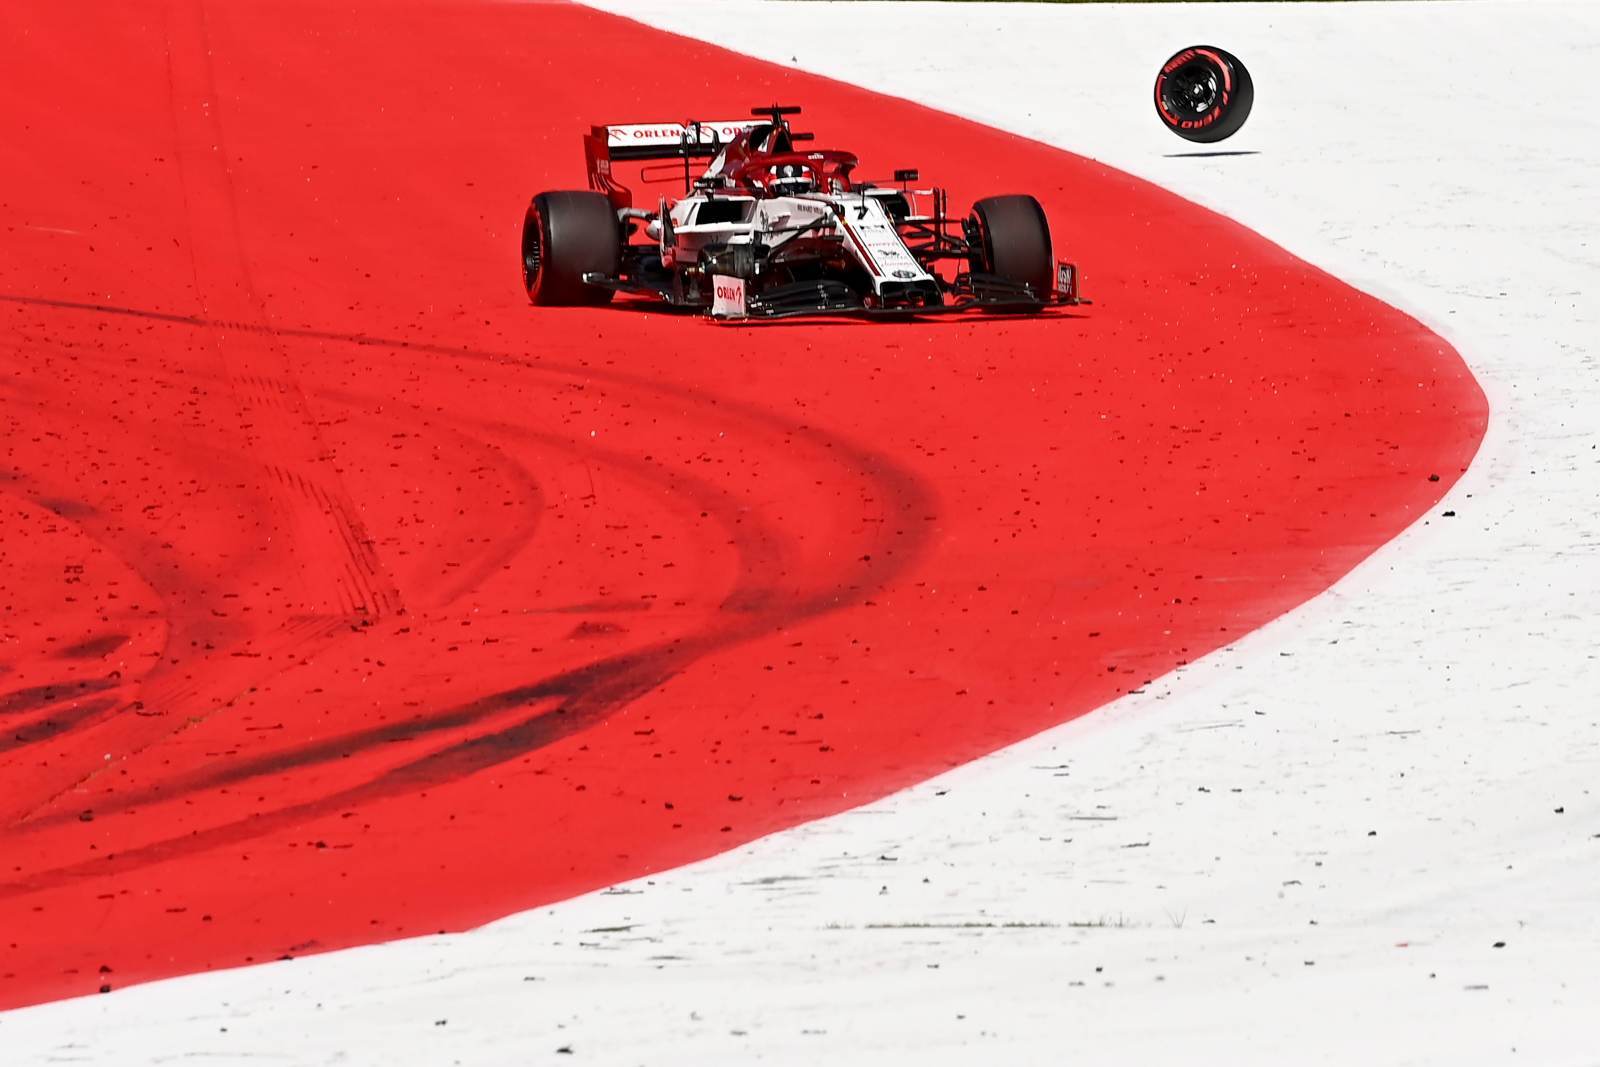 Durante a corrida, o pneu de Kimi Räikkönen acabou se soltando e obrigando a entrada do safety-car